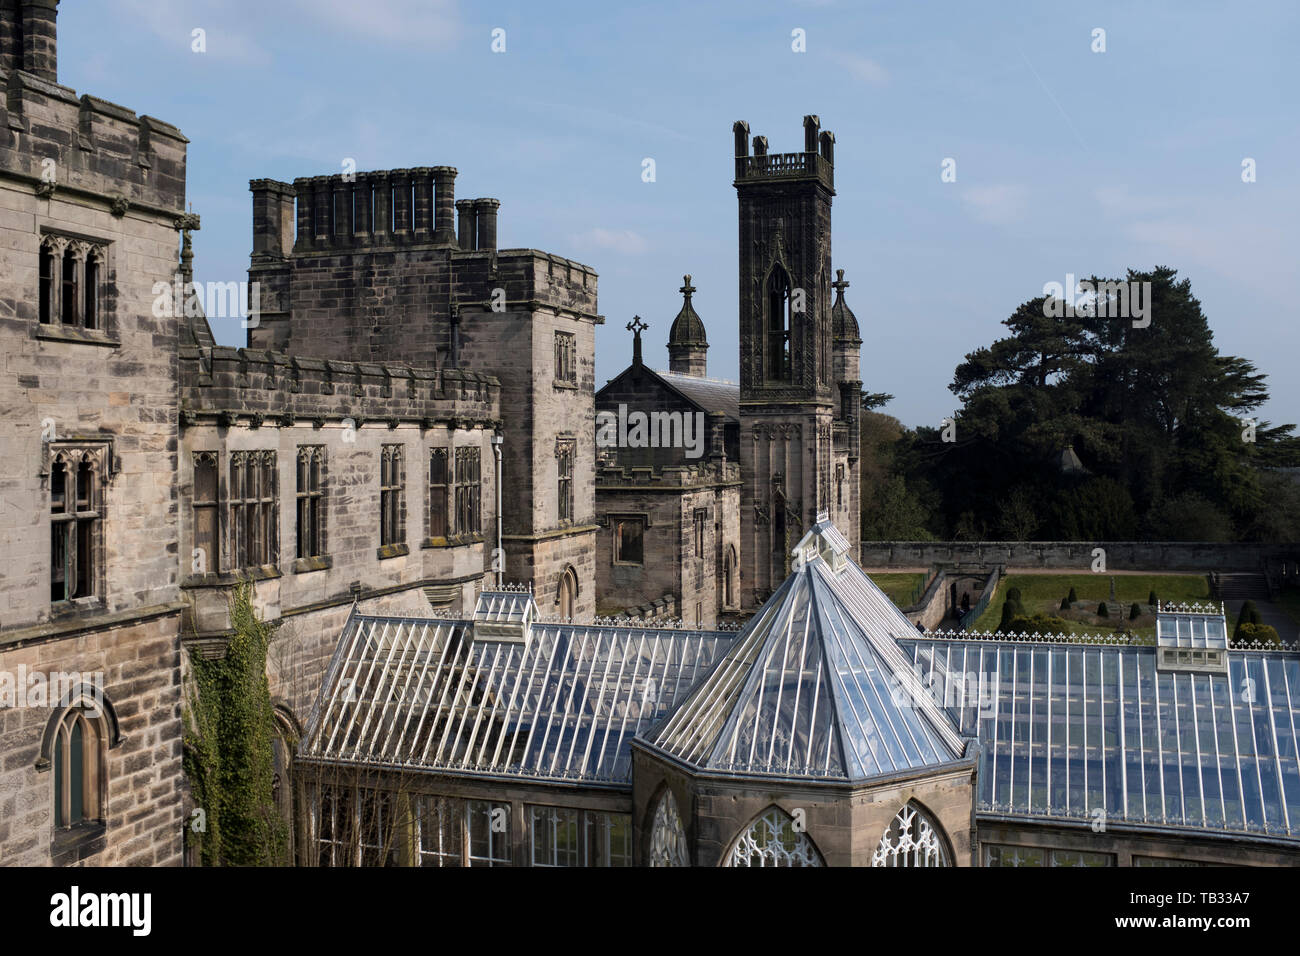 dh la Maison de la Tour ALTON TOURS DOMAINE STAFFORDSHIRE Earls of Shrewsbury a abandonné le style gothique majestueuse maison extérieure Royaume-Uni Banque D'Images